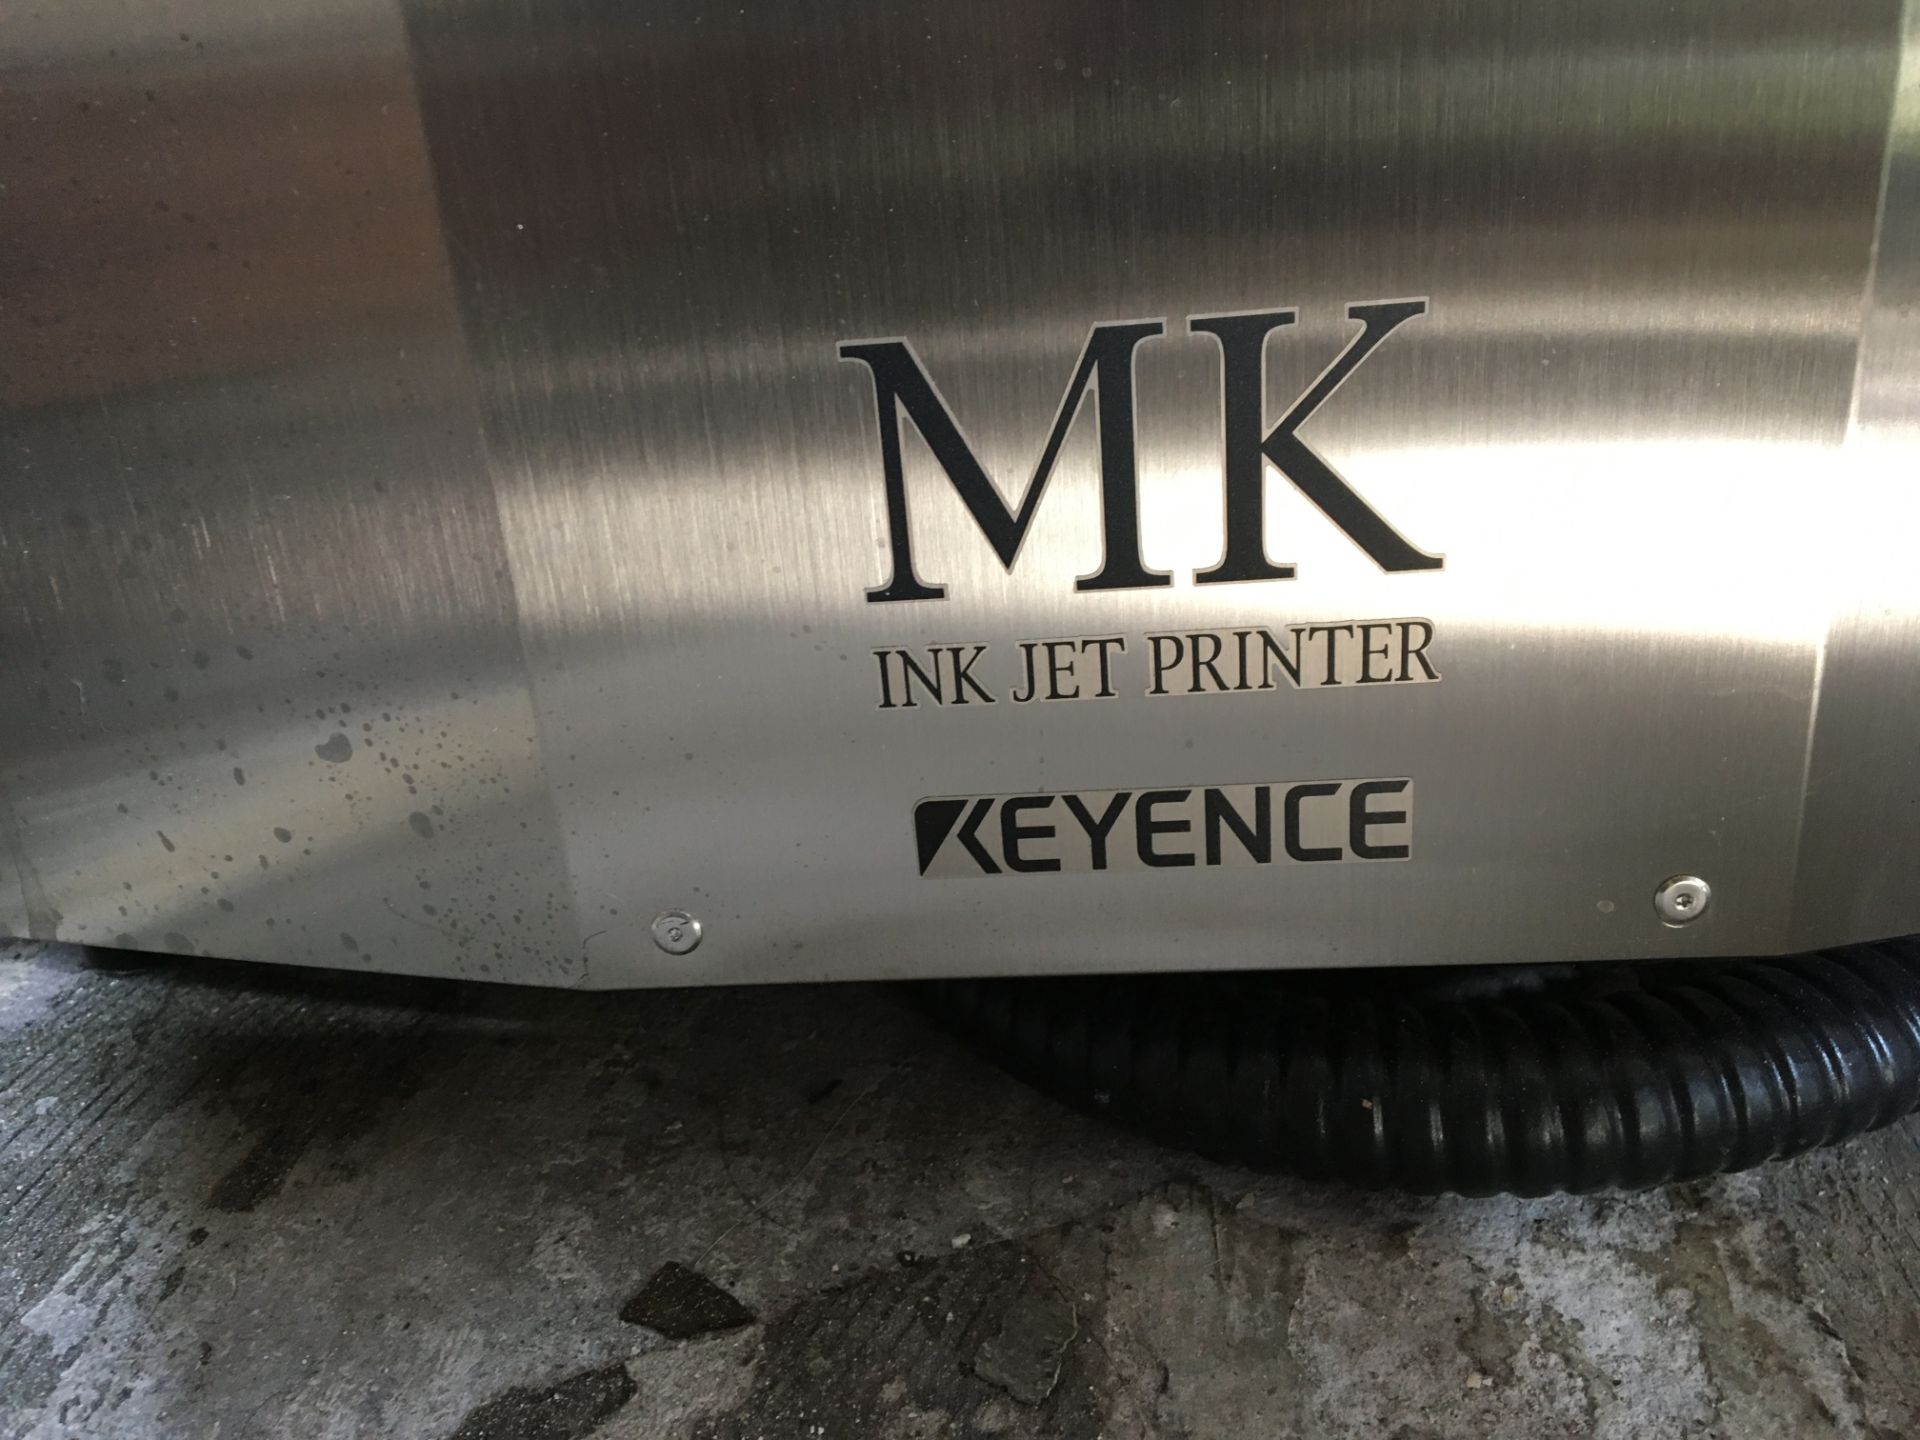 Keyence MK Ink Jet Printer, Model MK-U Series, Keyence ink jet printer/ label maker - Image 3 of 13